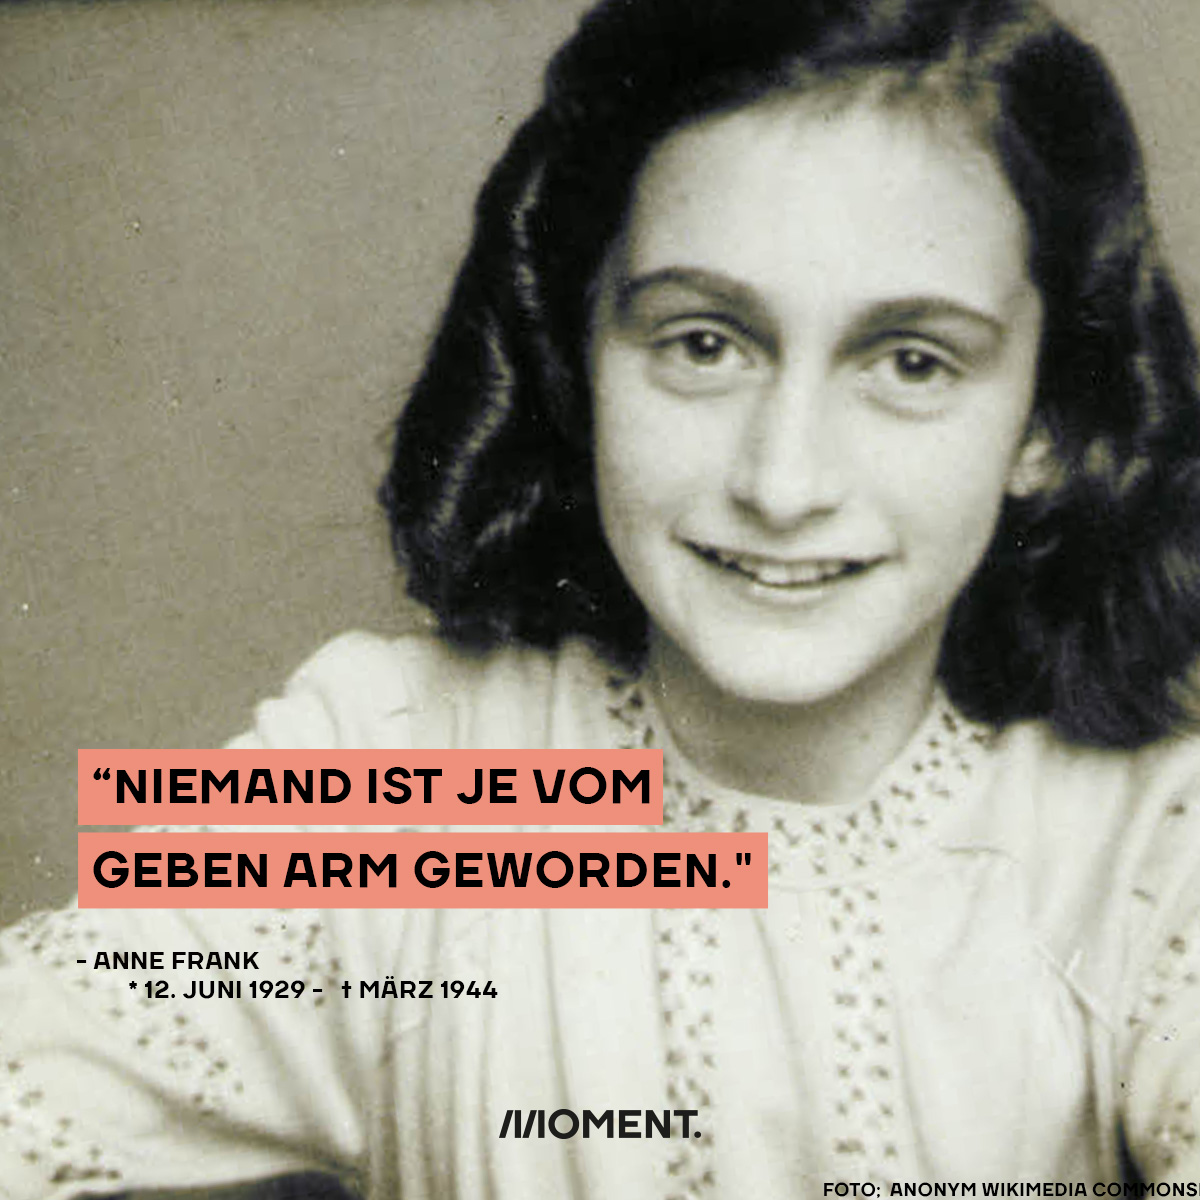 Foto von Anne Frank mit Schriftzug eines Zitates von ihr "Niemand ist je vom Geben arm geworden."